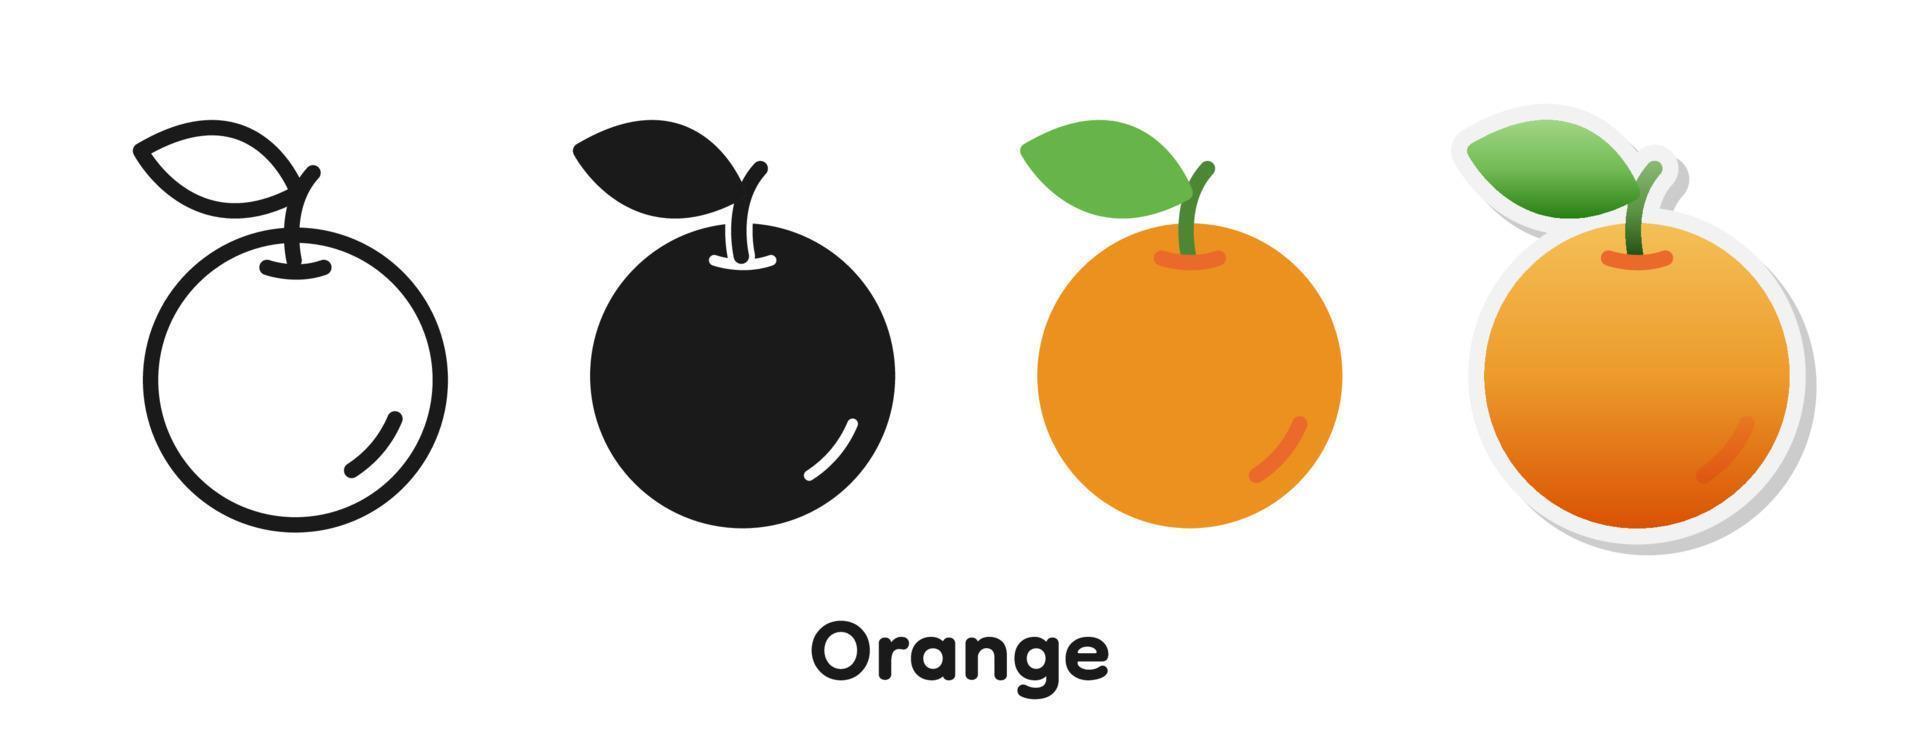 vektor ikonuppsättning av orange.